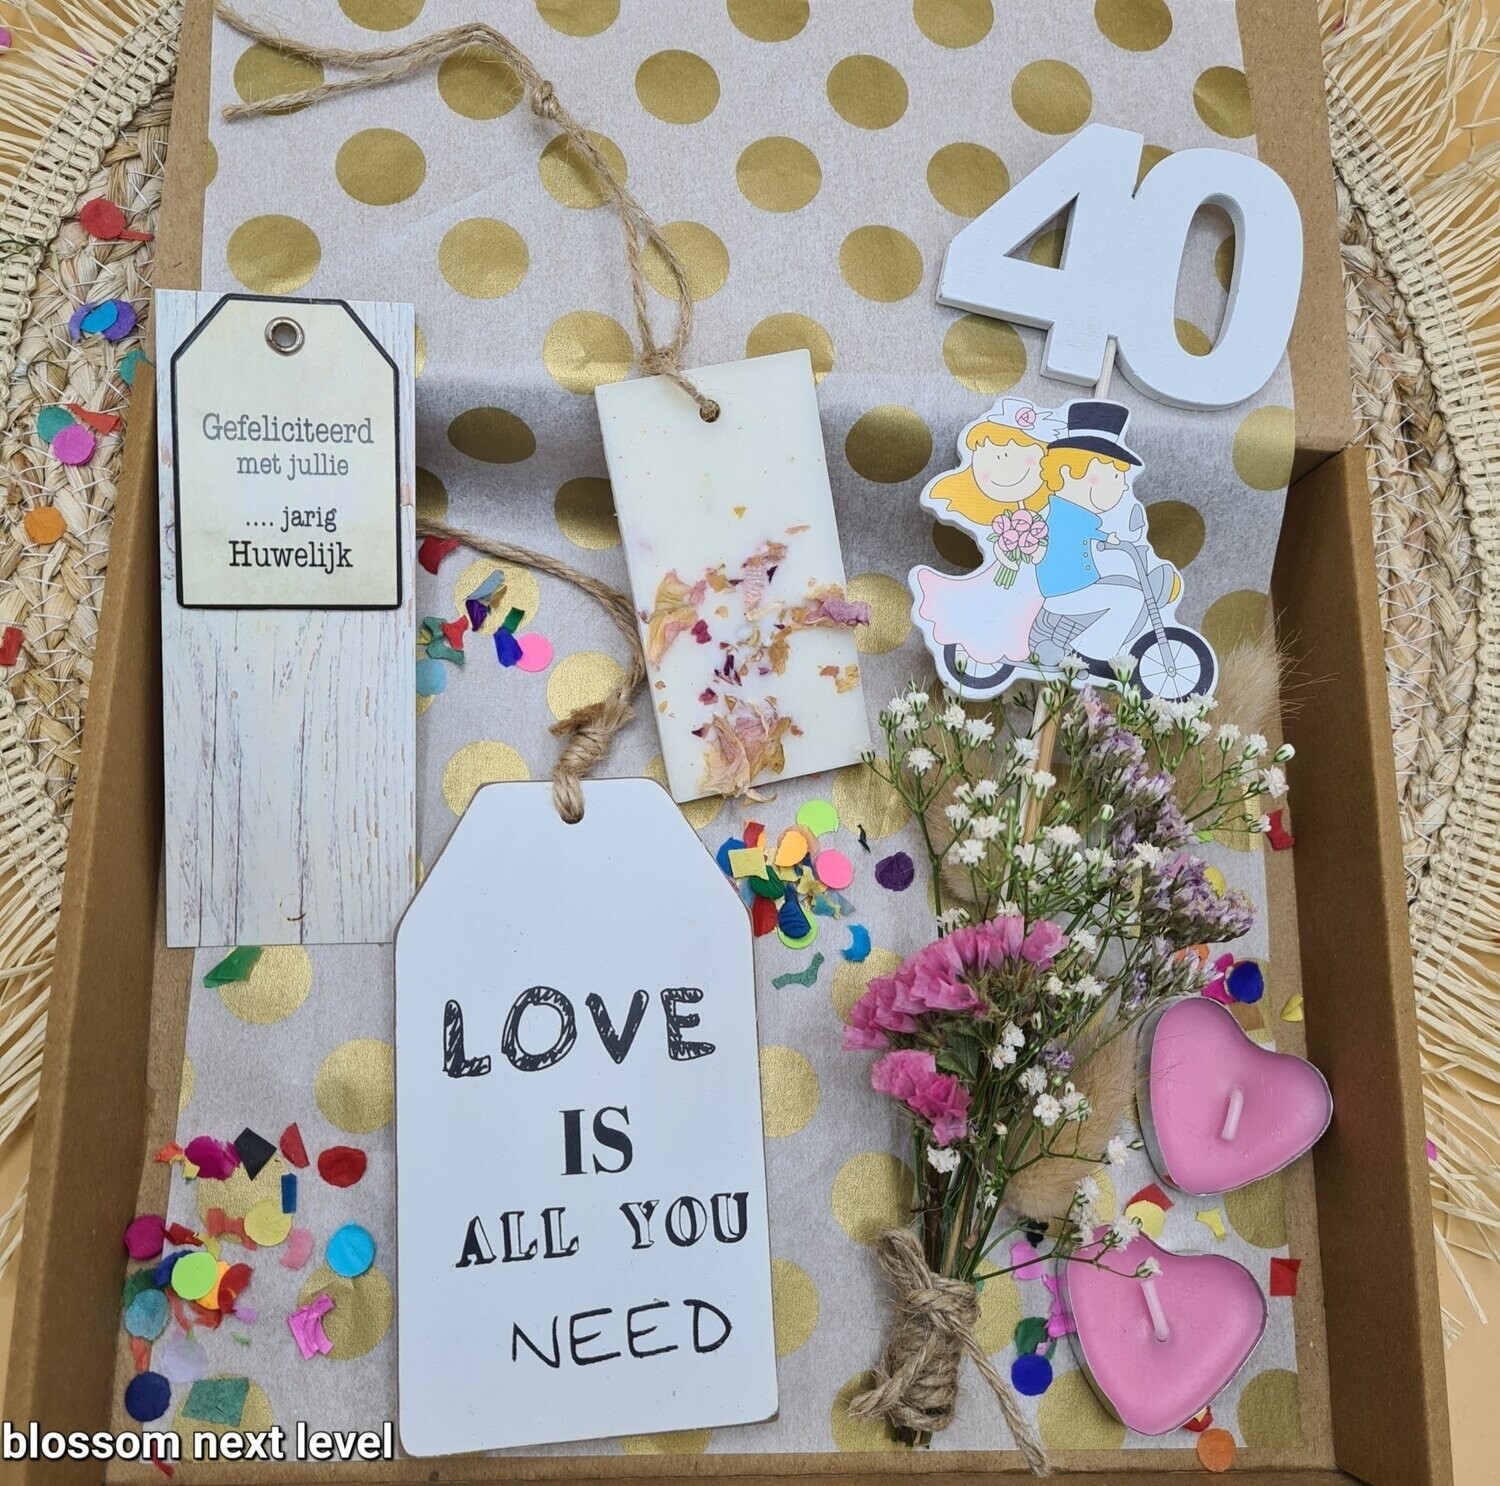 De '40 jaar' getrouwd box